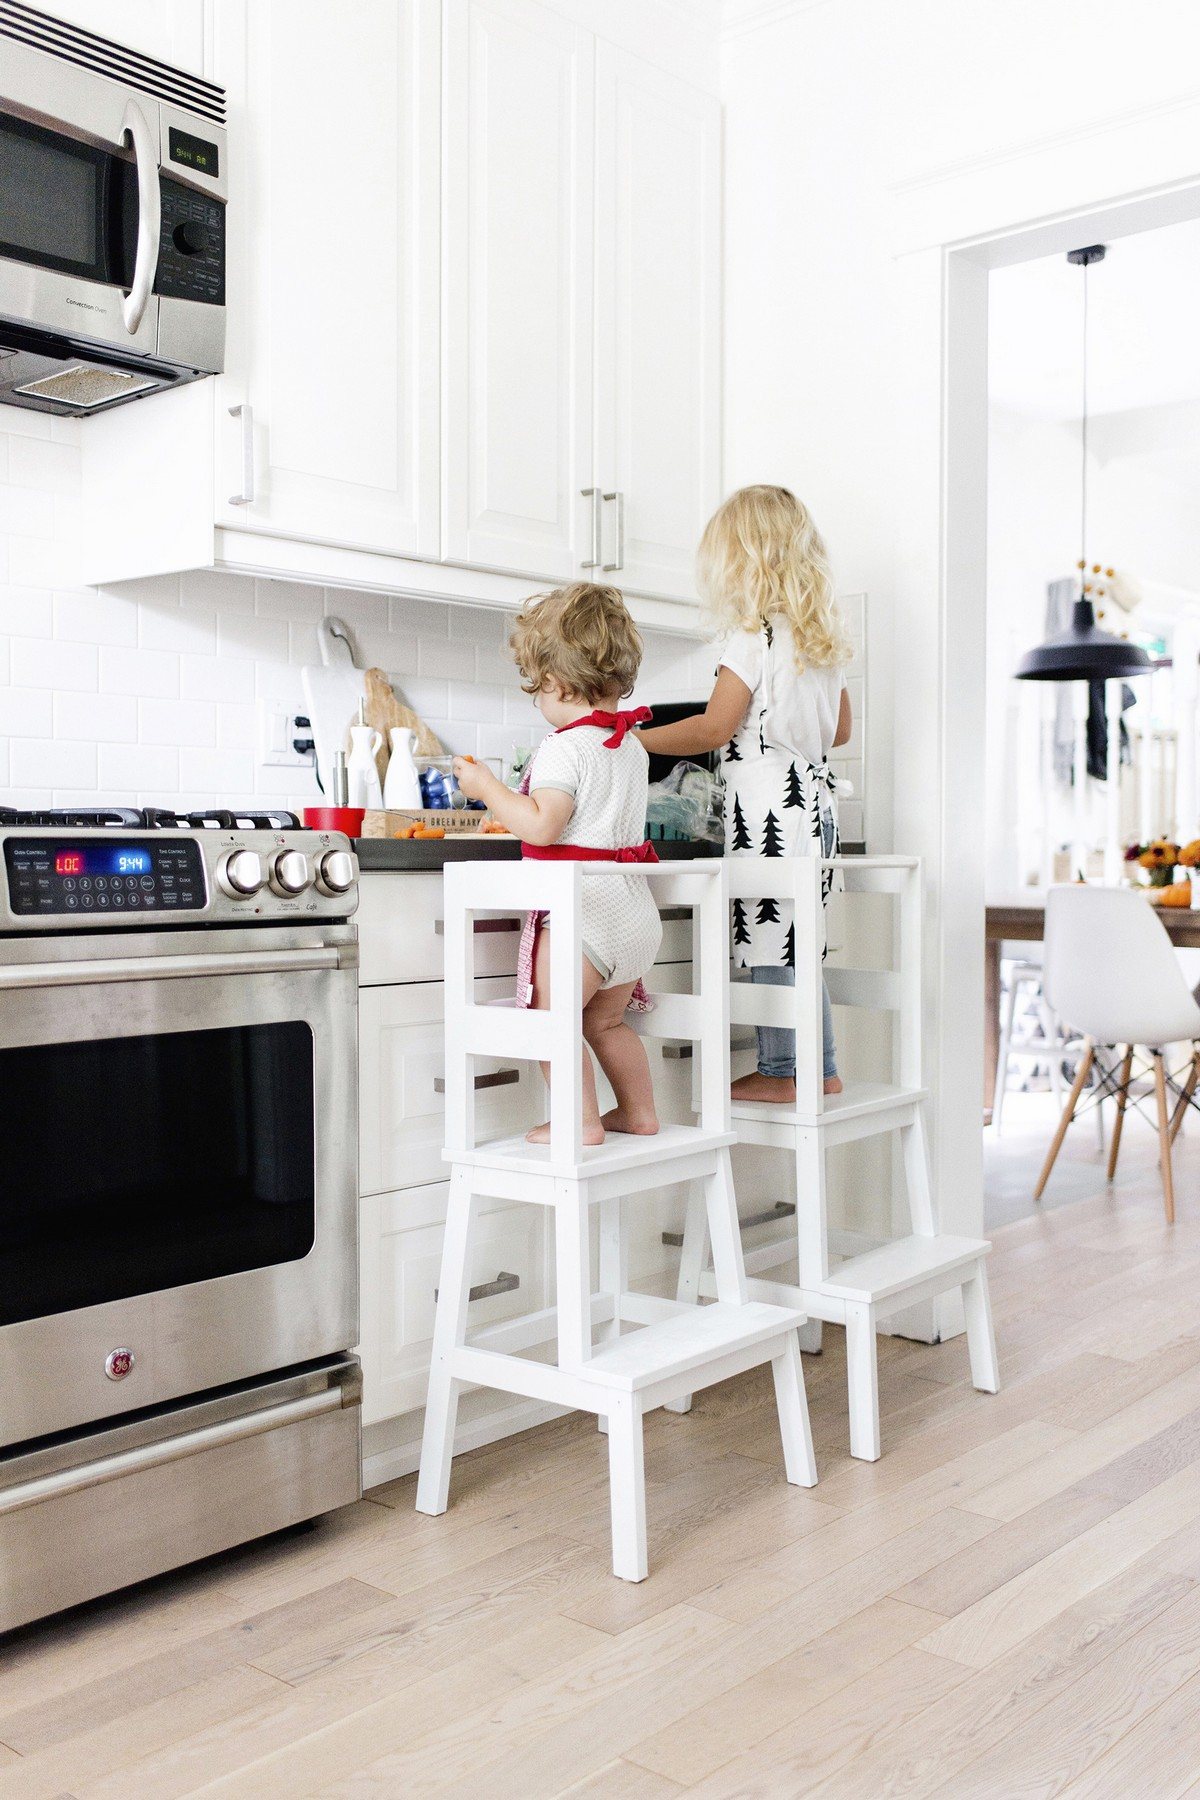 Una torre de aprendizaje (también conocida como compañero de cocina) es un taburete diseñado para que los niños pequeños lo usen en la cocina.  A diferencia de un taburete regular, una torre de aprendizaje tiene características de seguridad que la hacen más segura para los niños pequeños que pueden perder el equilibrio.